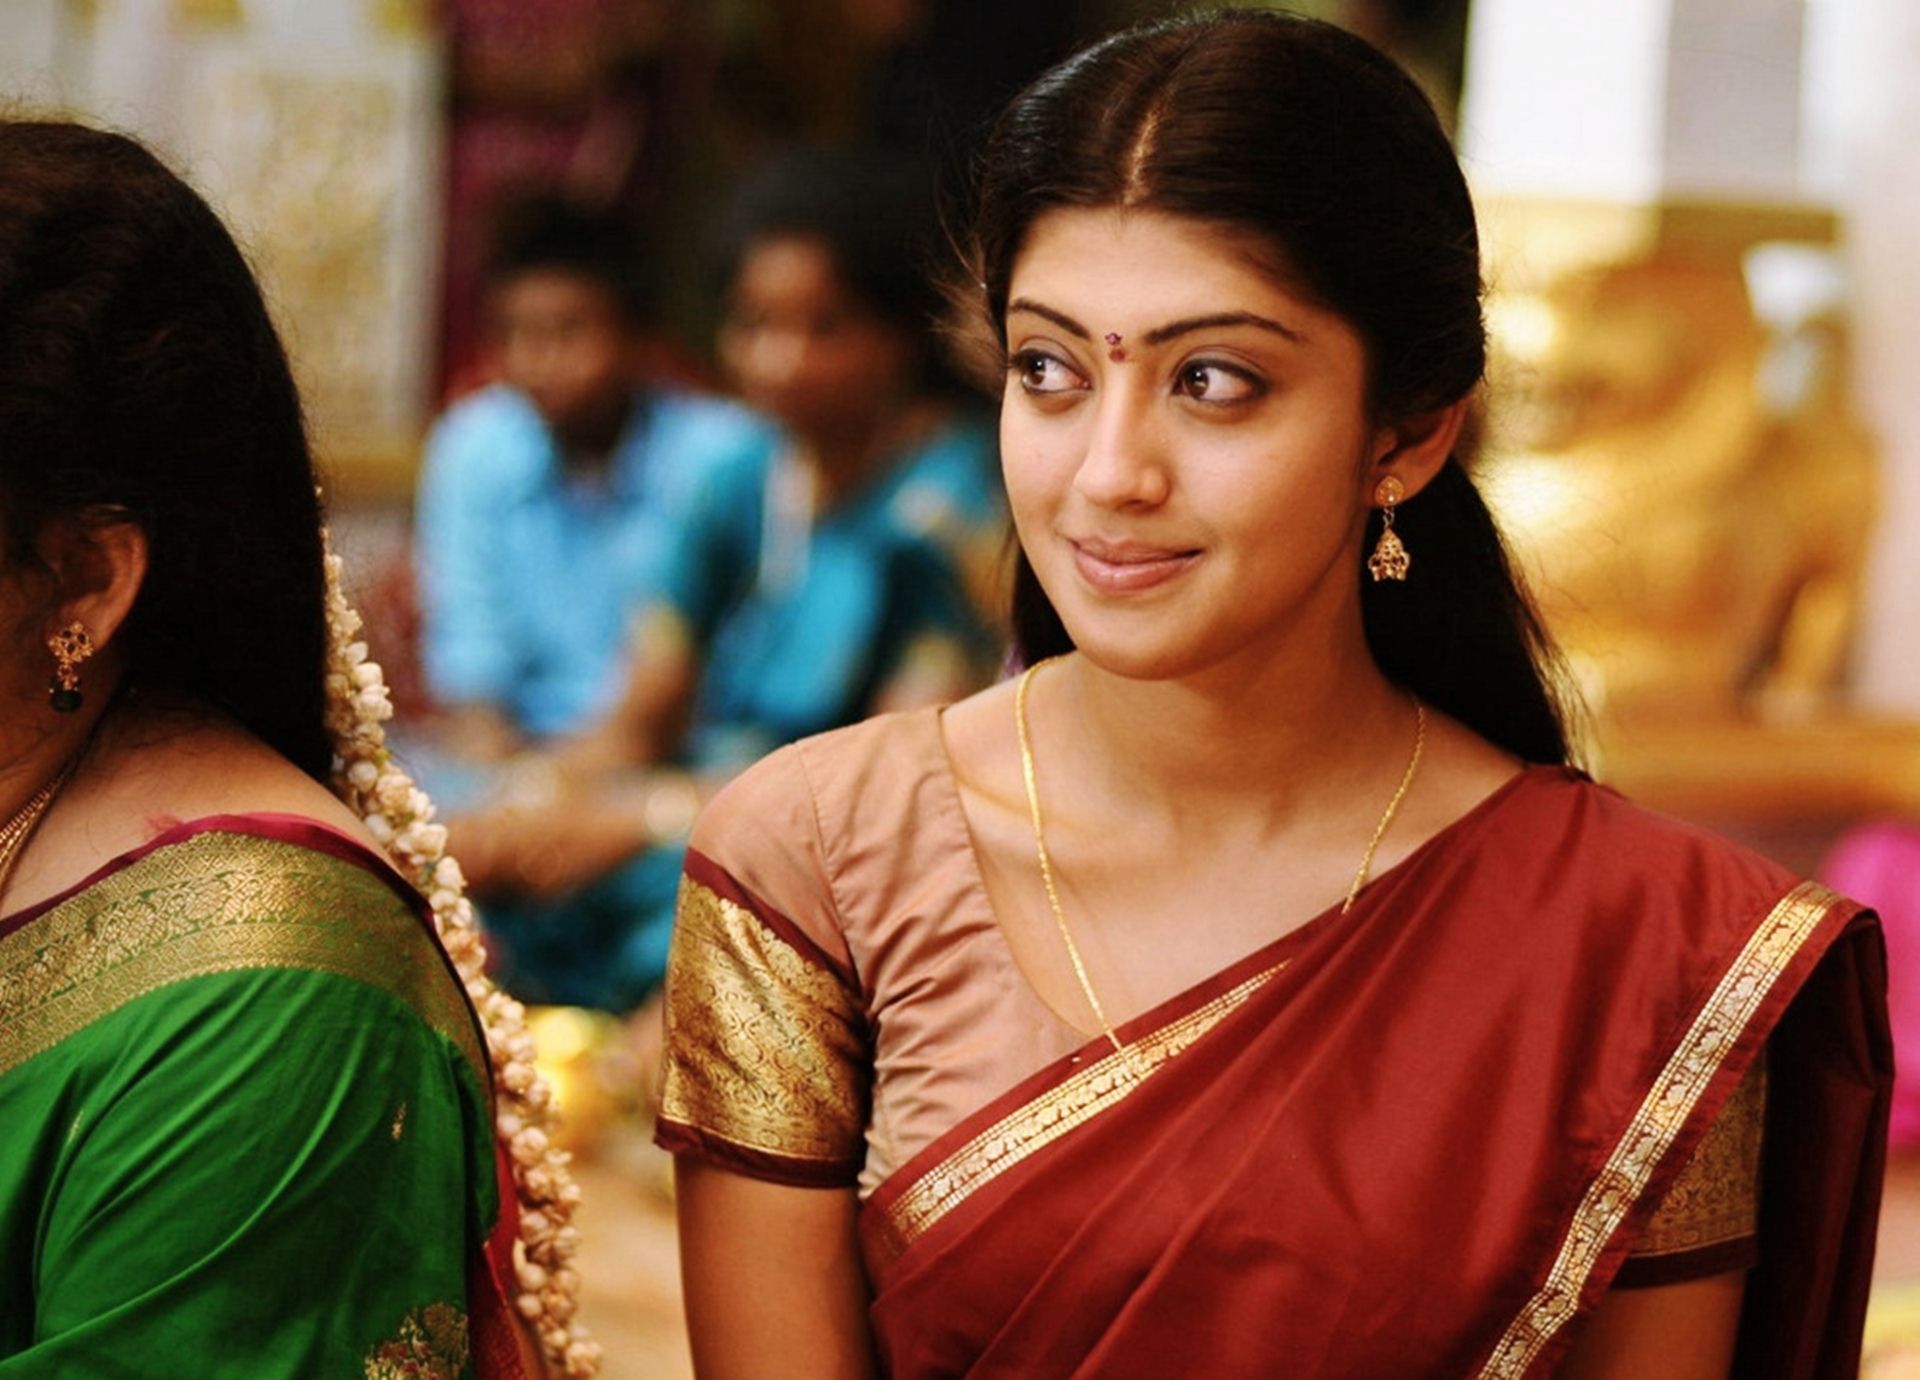 pranitha subhash tamil telgu actress